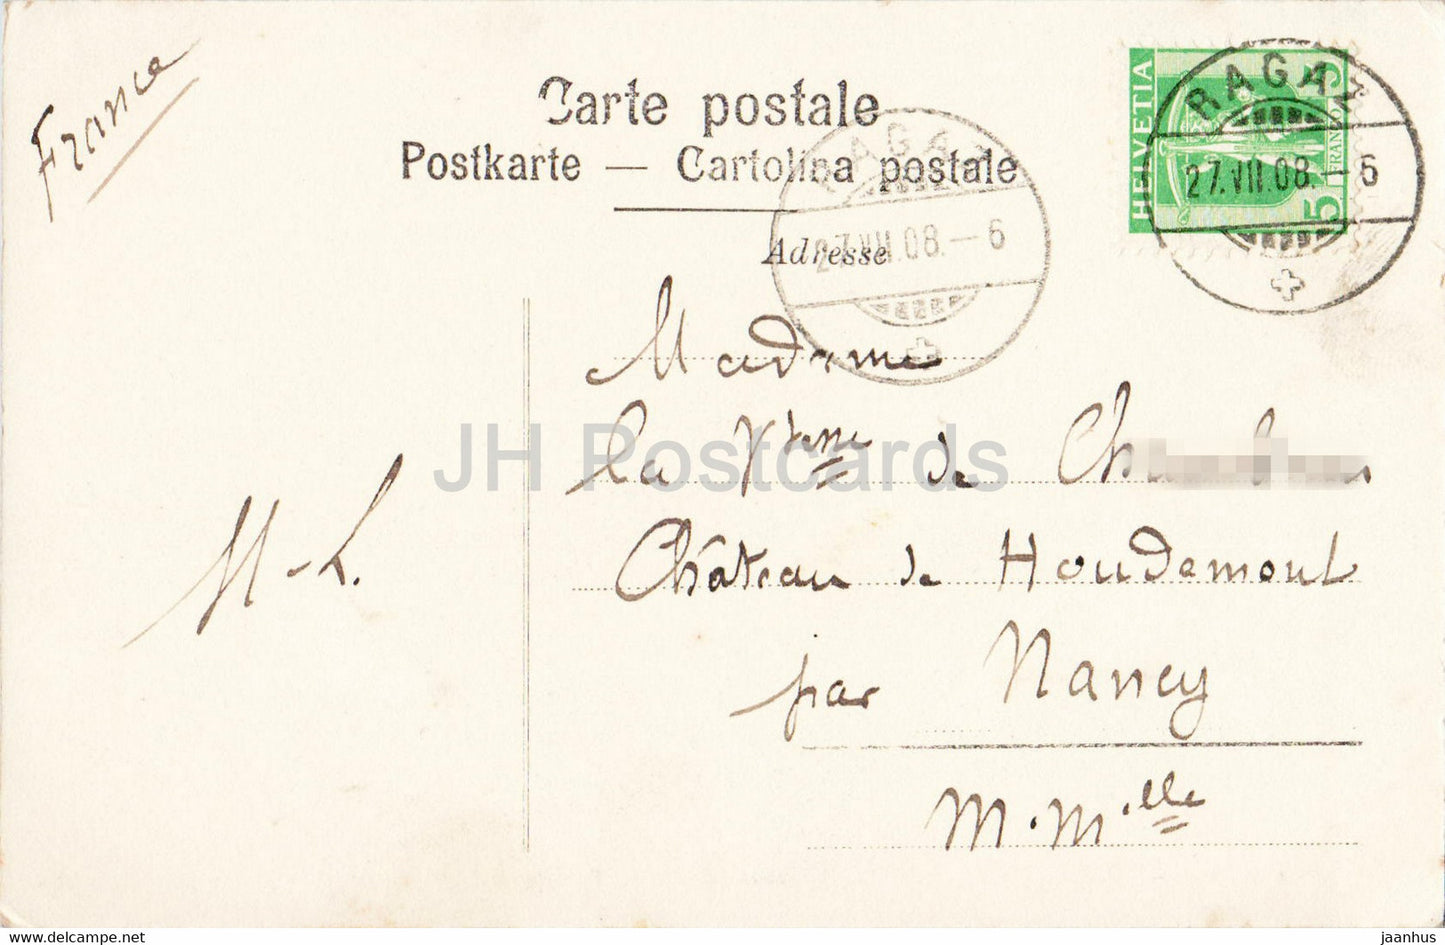 Ragaz - Ruine und Hotel Wartenstein - 6524 - carte postale ancienne - 1908 - Suisse - utilisé